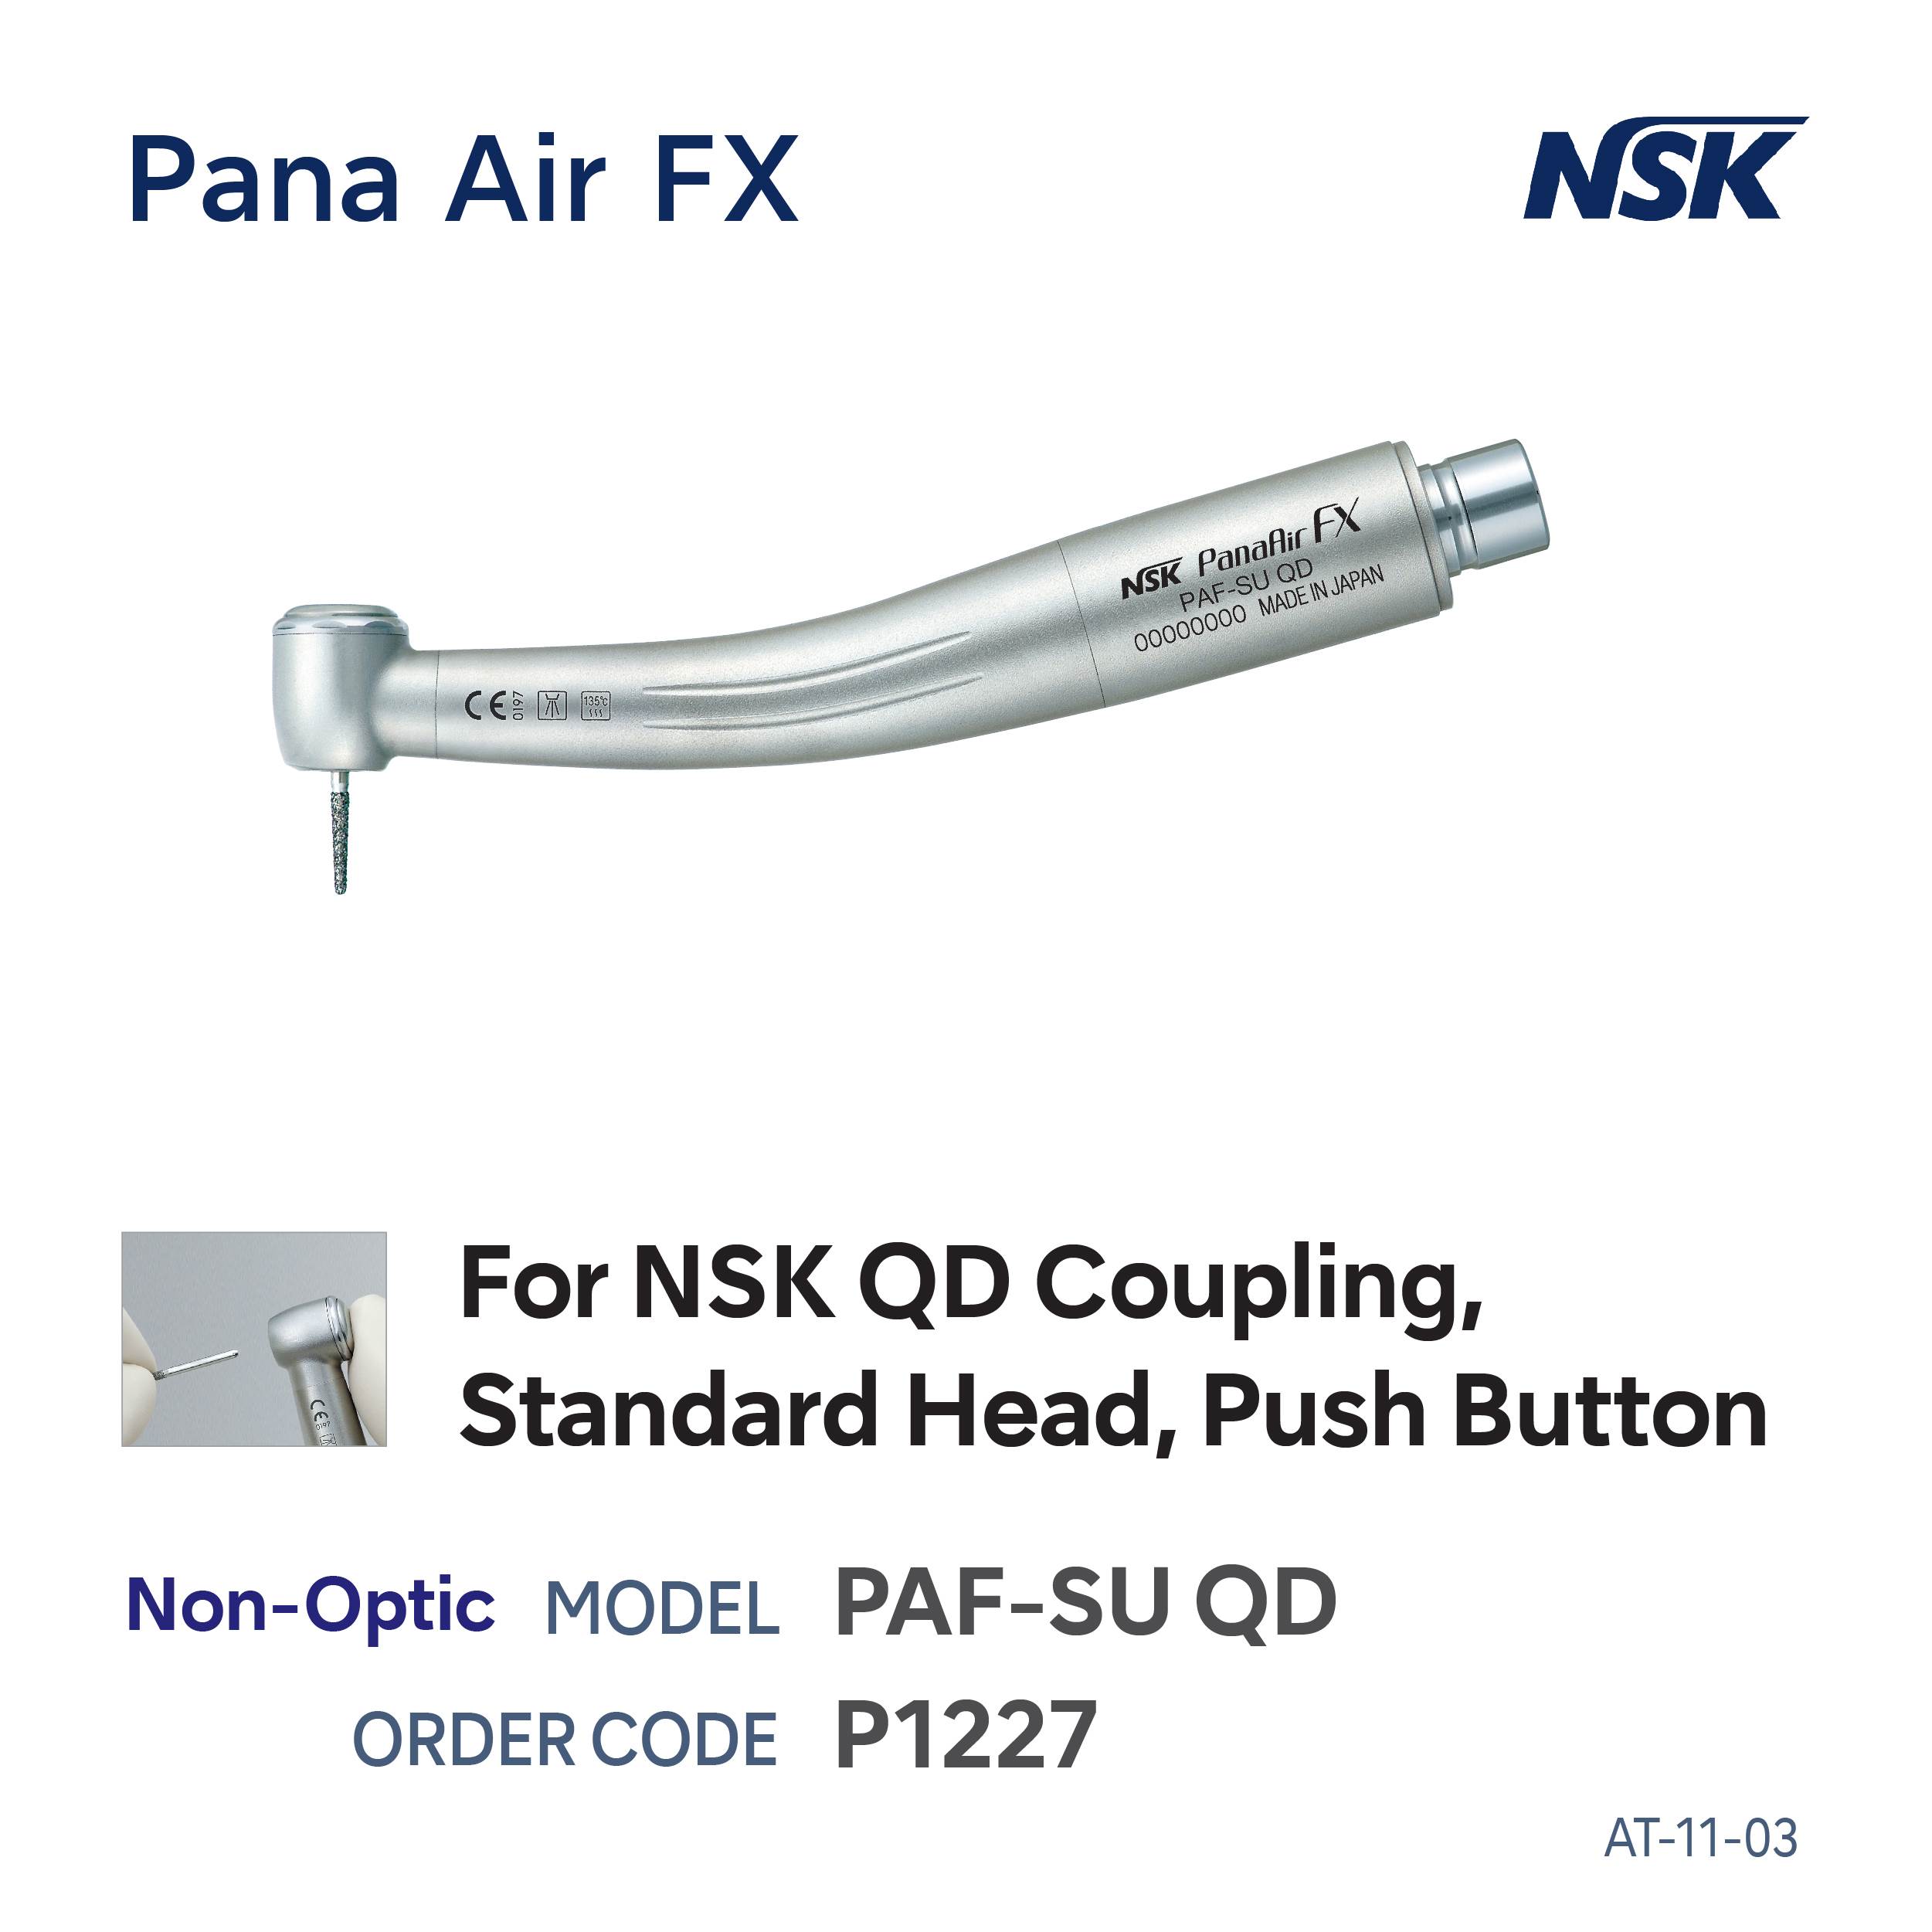 Pana Air FX Handpiece PA F SU QD